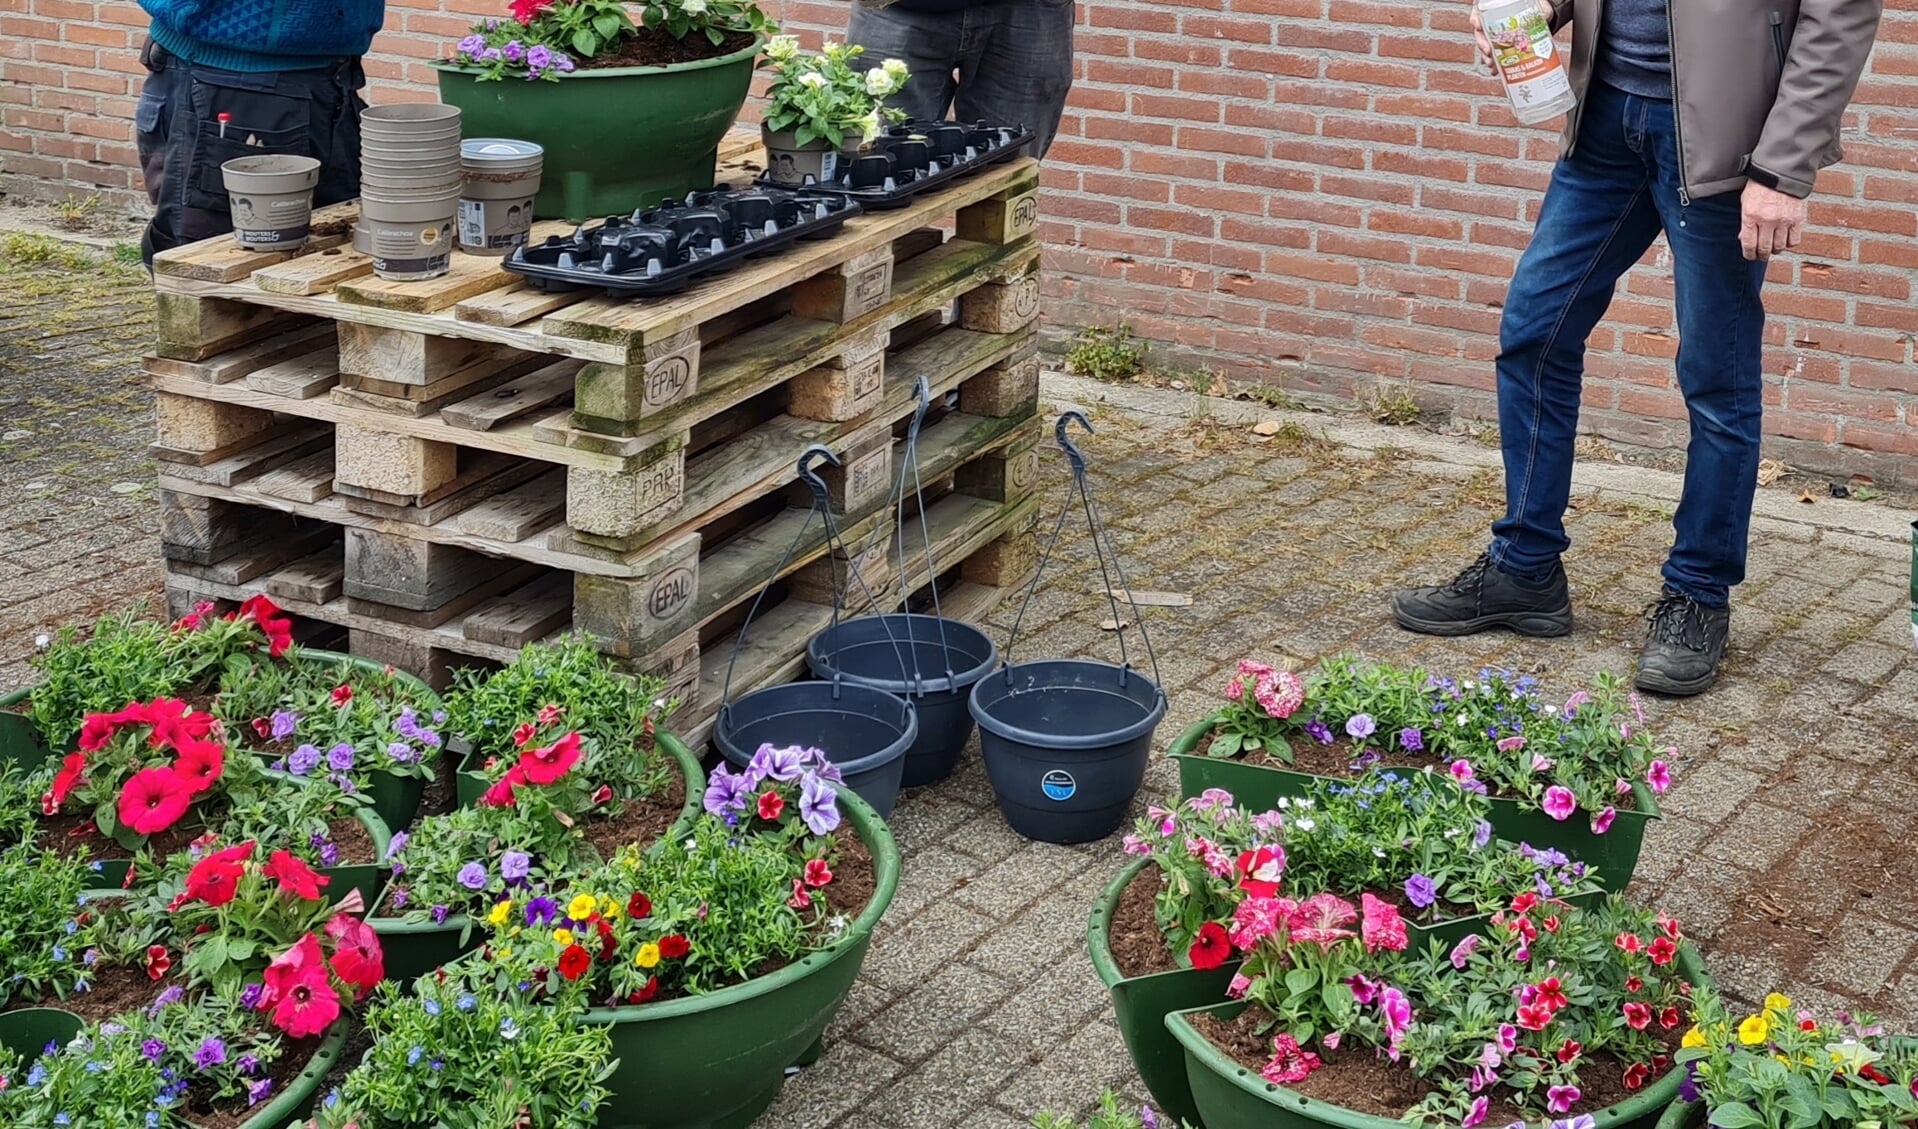 Initiatiefnemer Reint Beunk, vrijwilliger Hans Langeler en sponsor Dinant Bergsma zetten de bloemetjes buiten.
Foto Willy Hermans